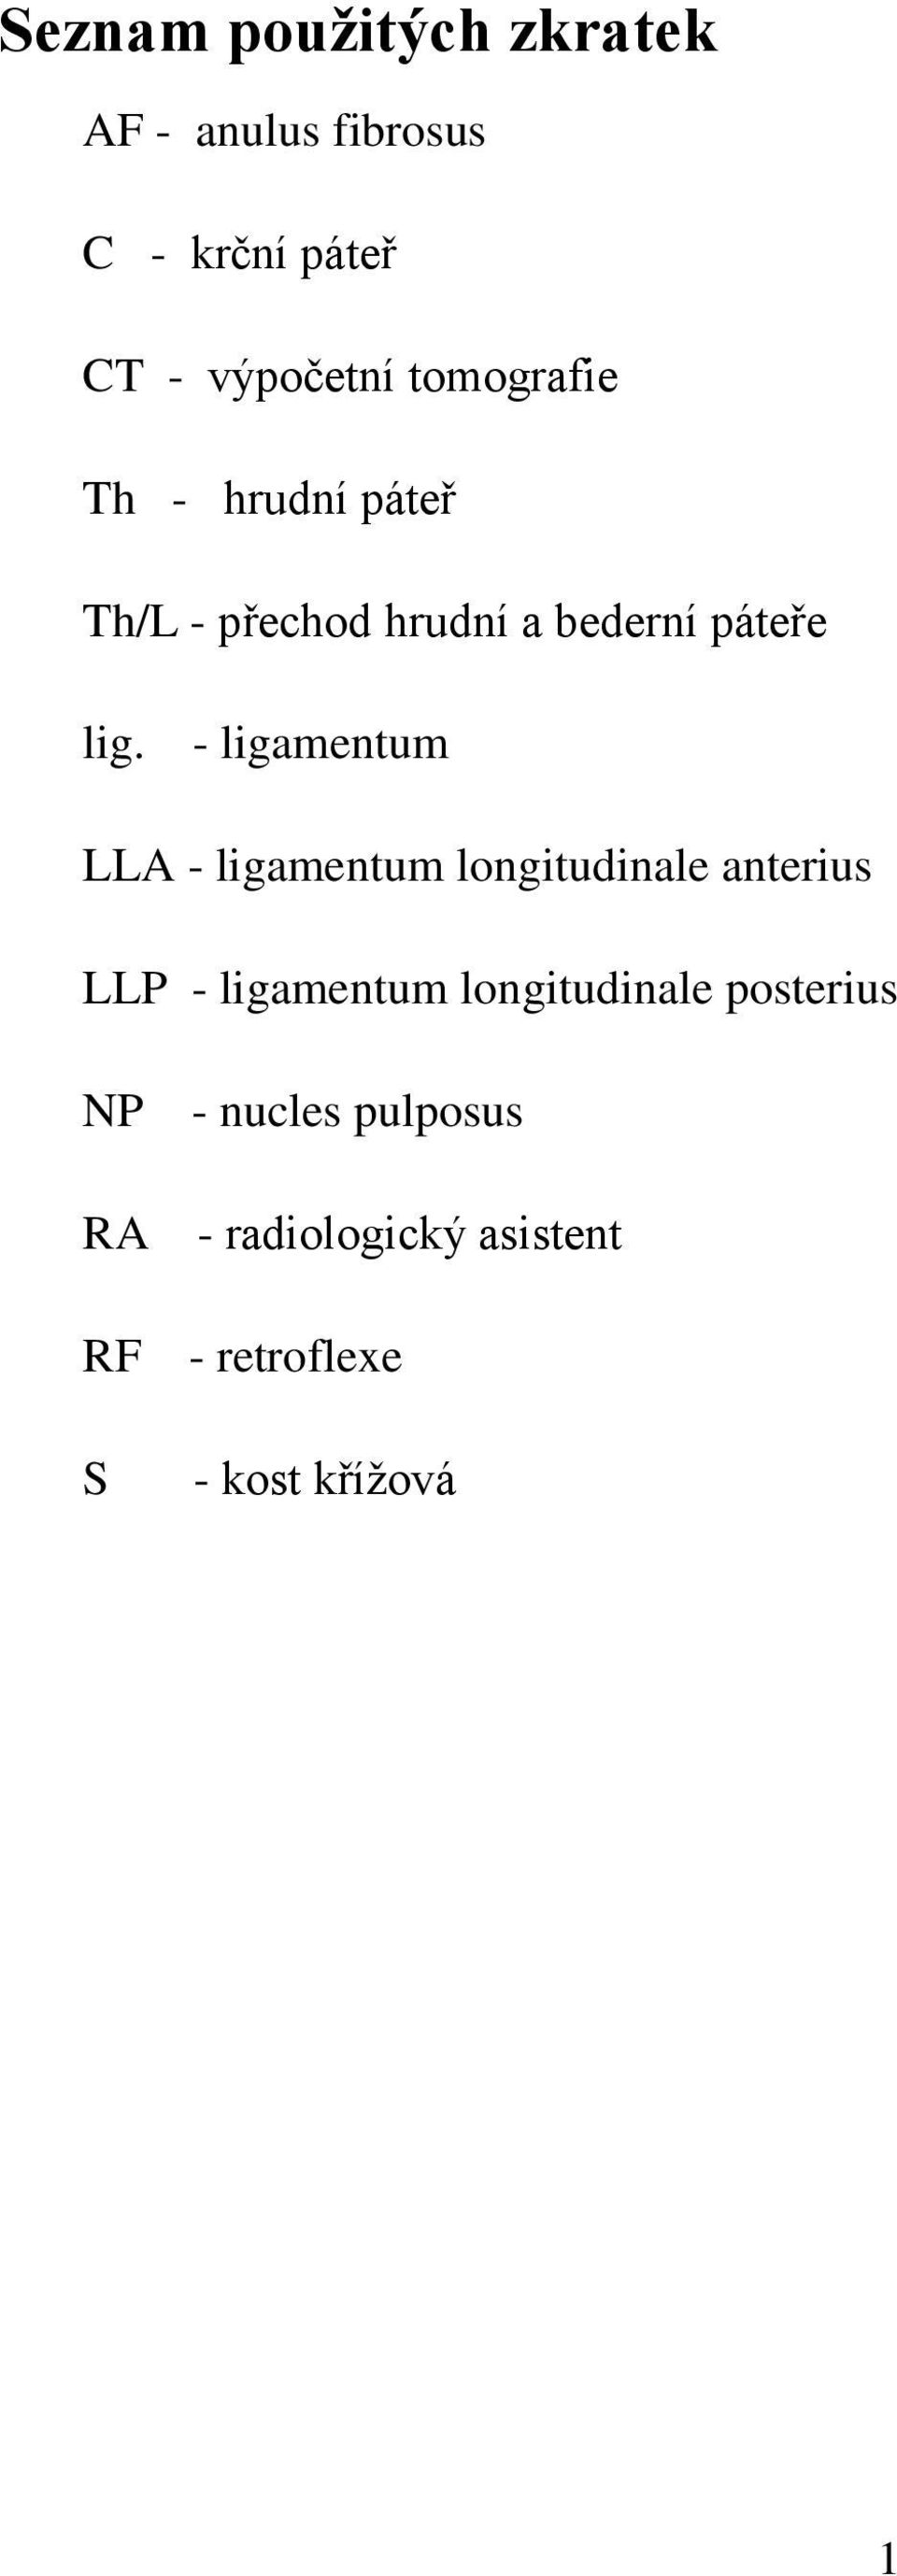 - ligamentum LLA - ligamentum longitudinale anterius LLP - ligamentum